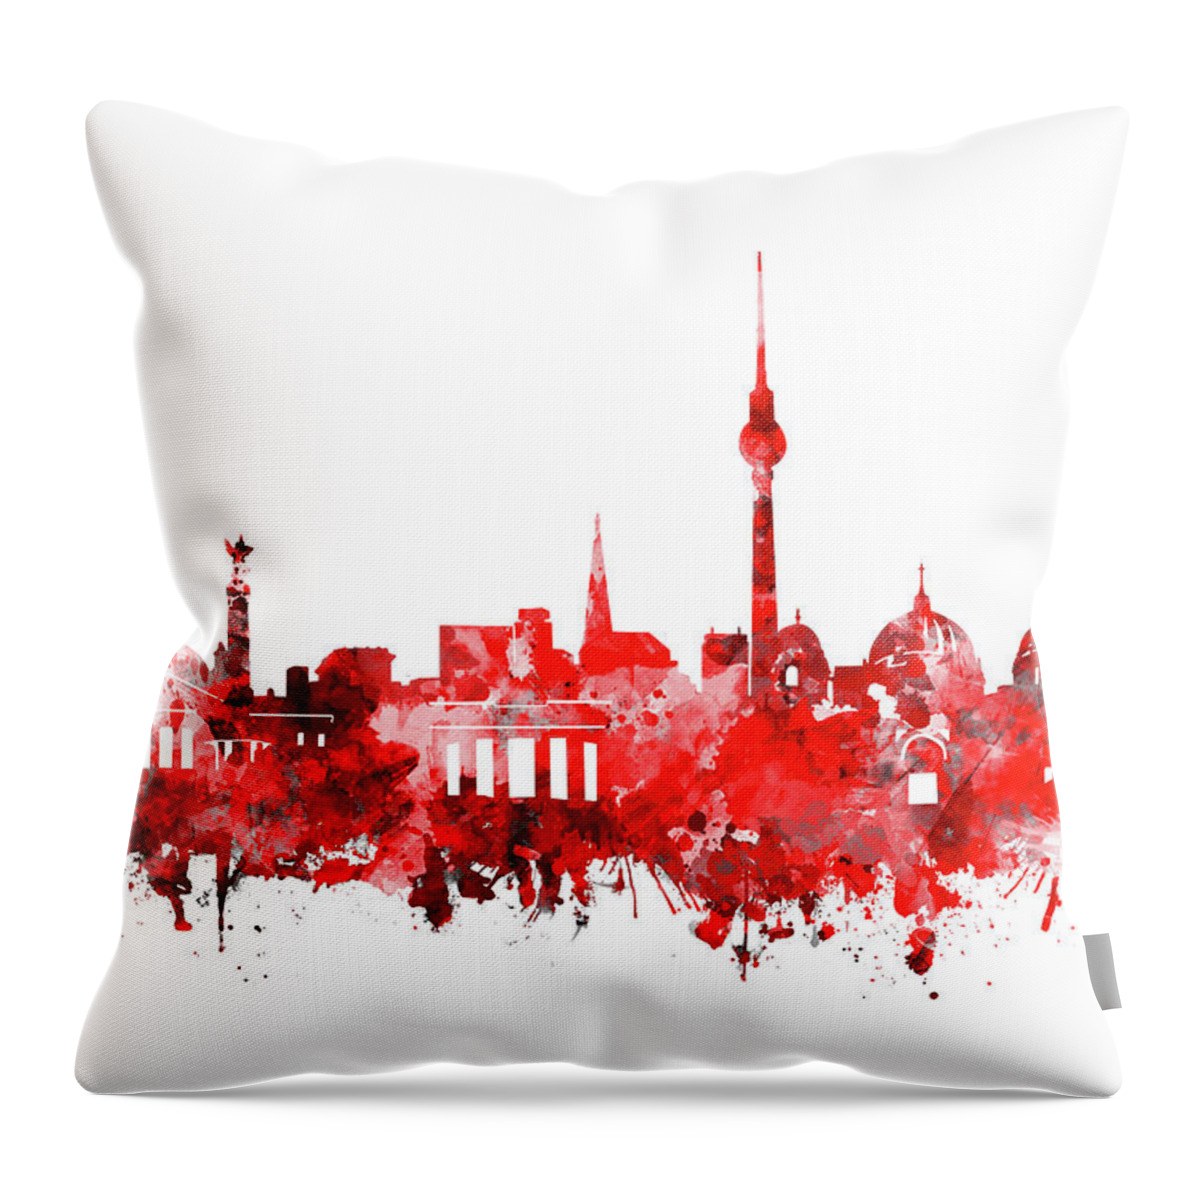 Berlin Throw Pillow featuring the digital art Berlin City Skyline Red by Bekim M